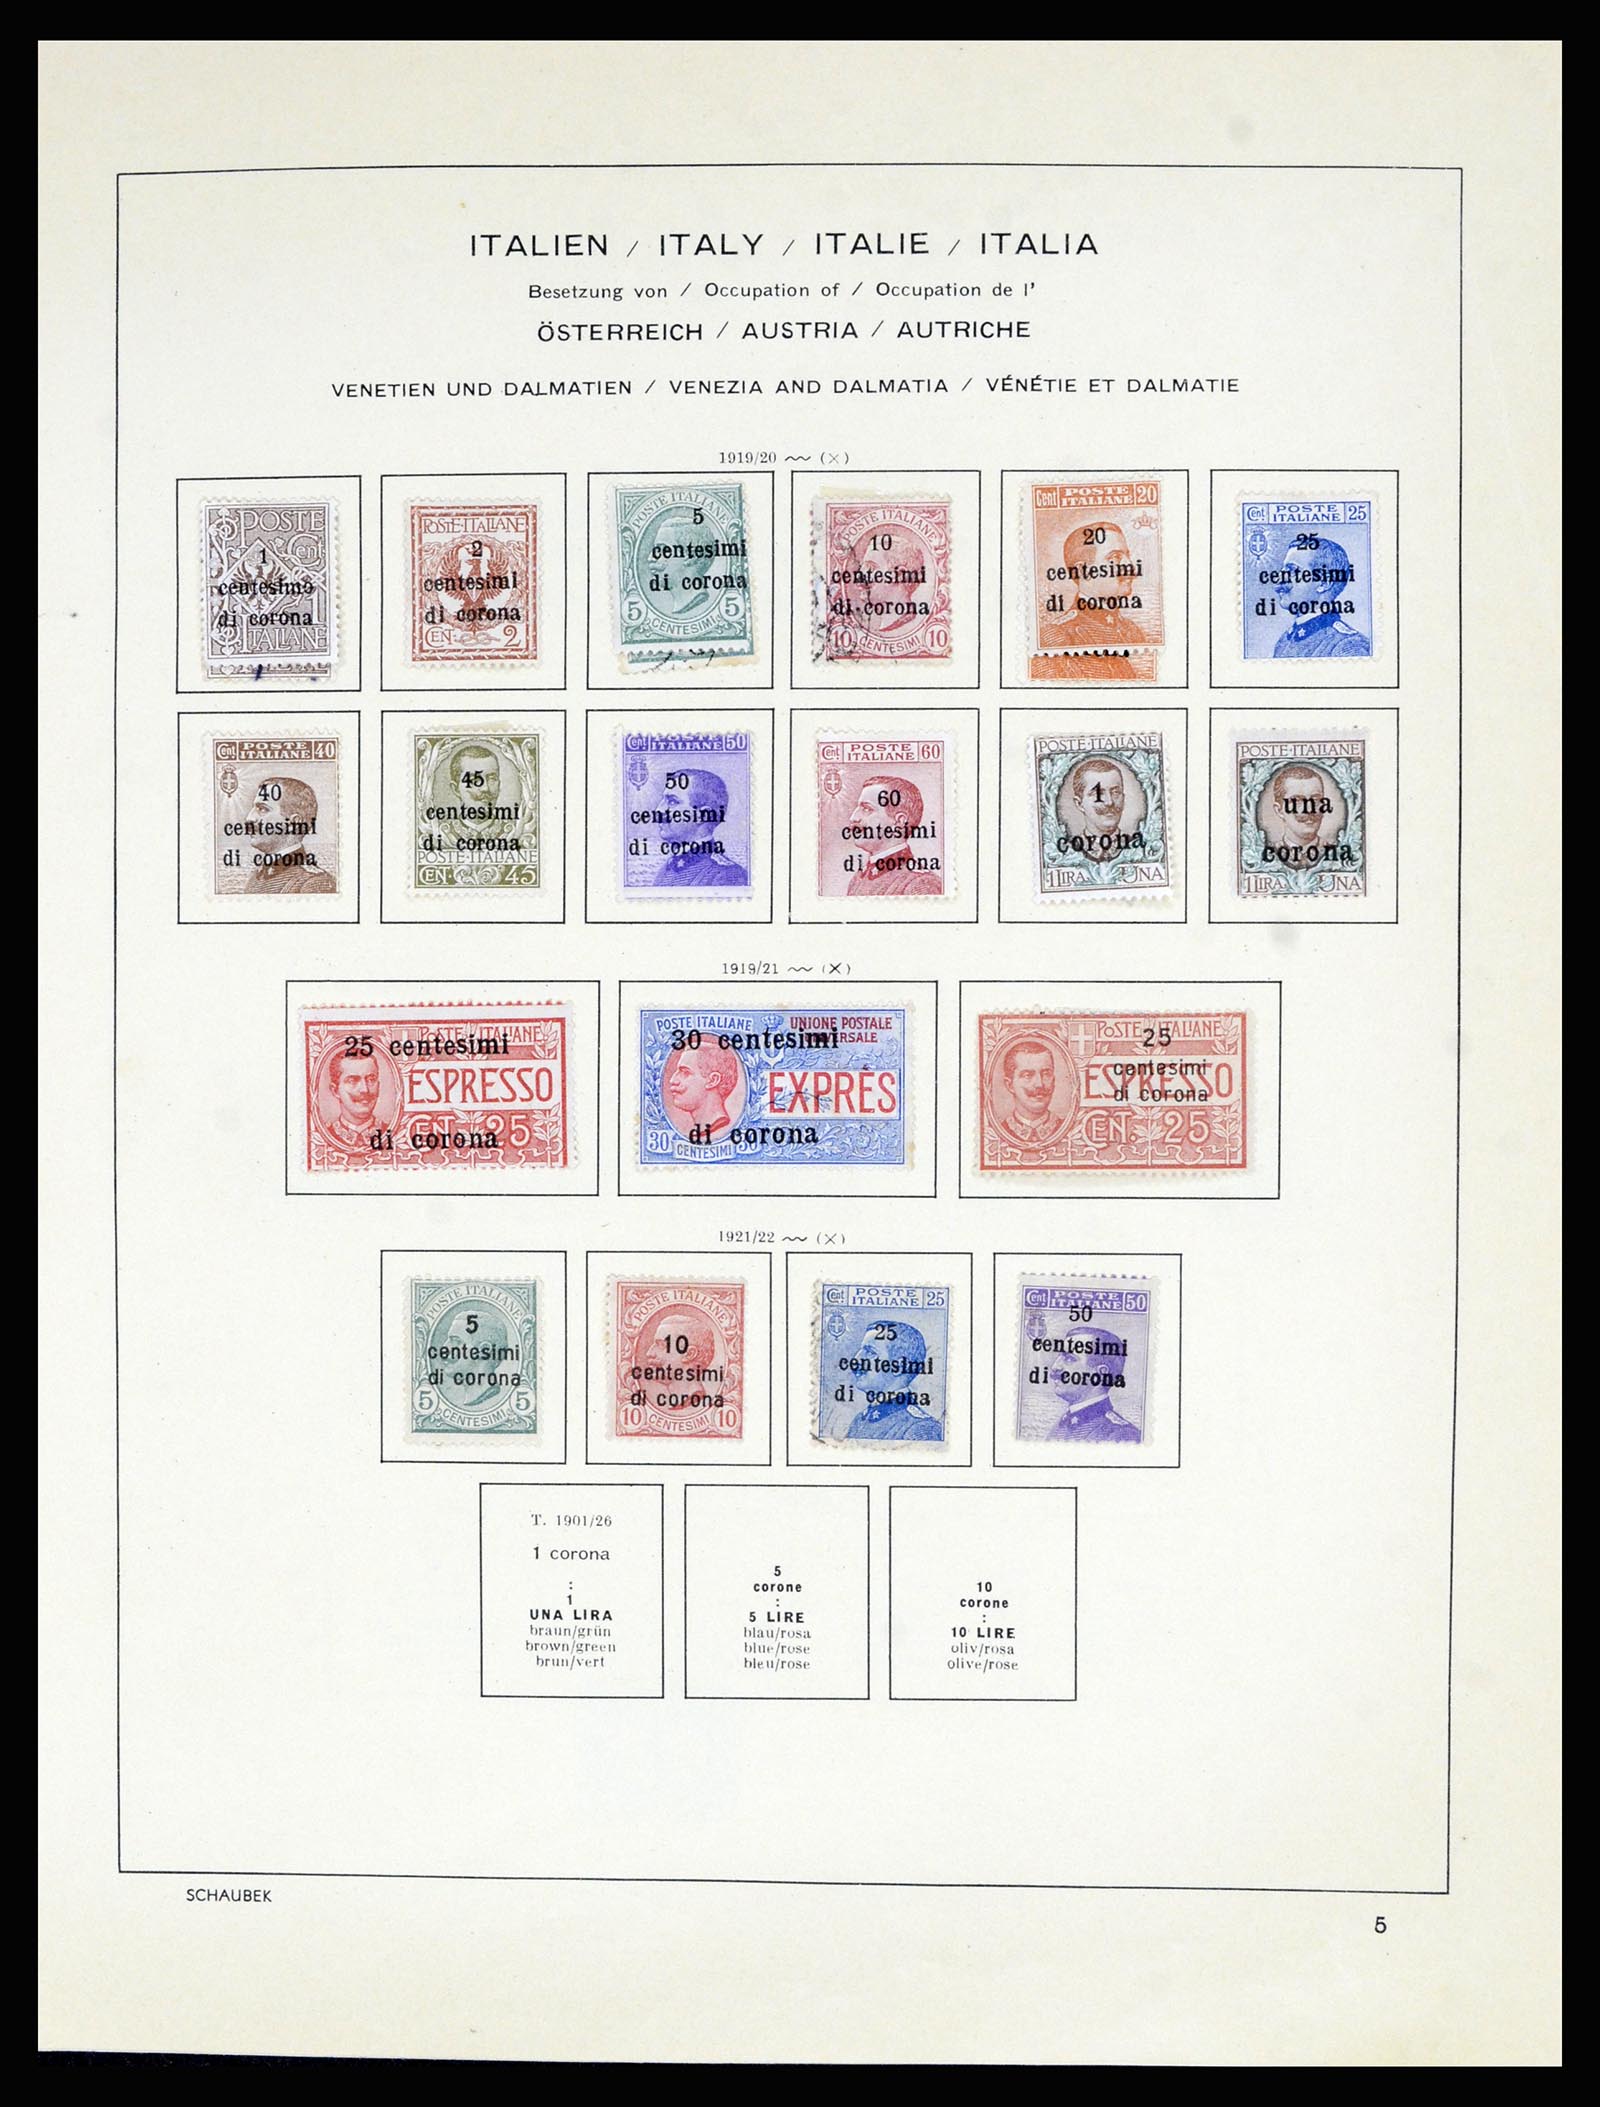 36576 048 - Stamp collection 36576 Italiaanse gebieden en koloniën 1874-1954.